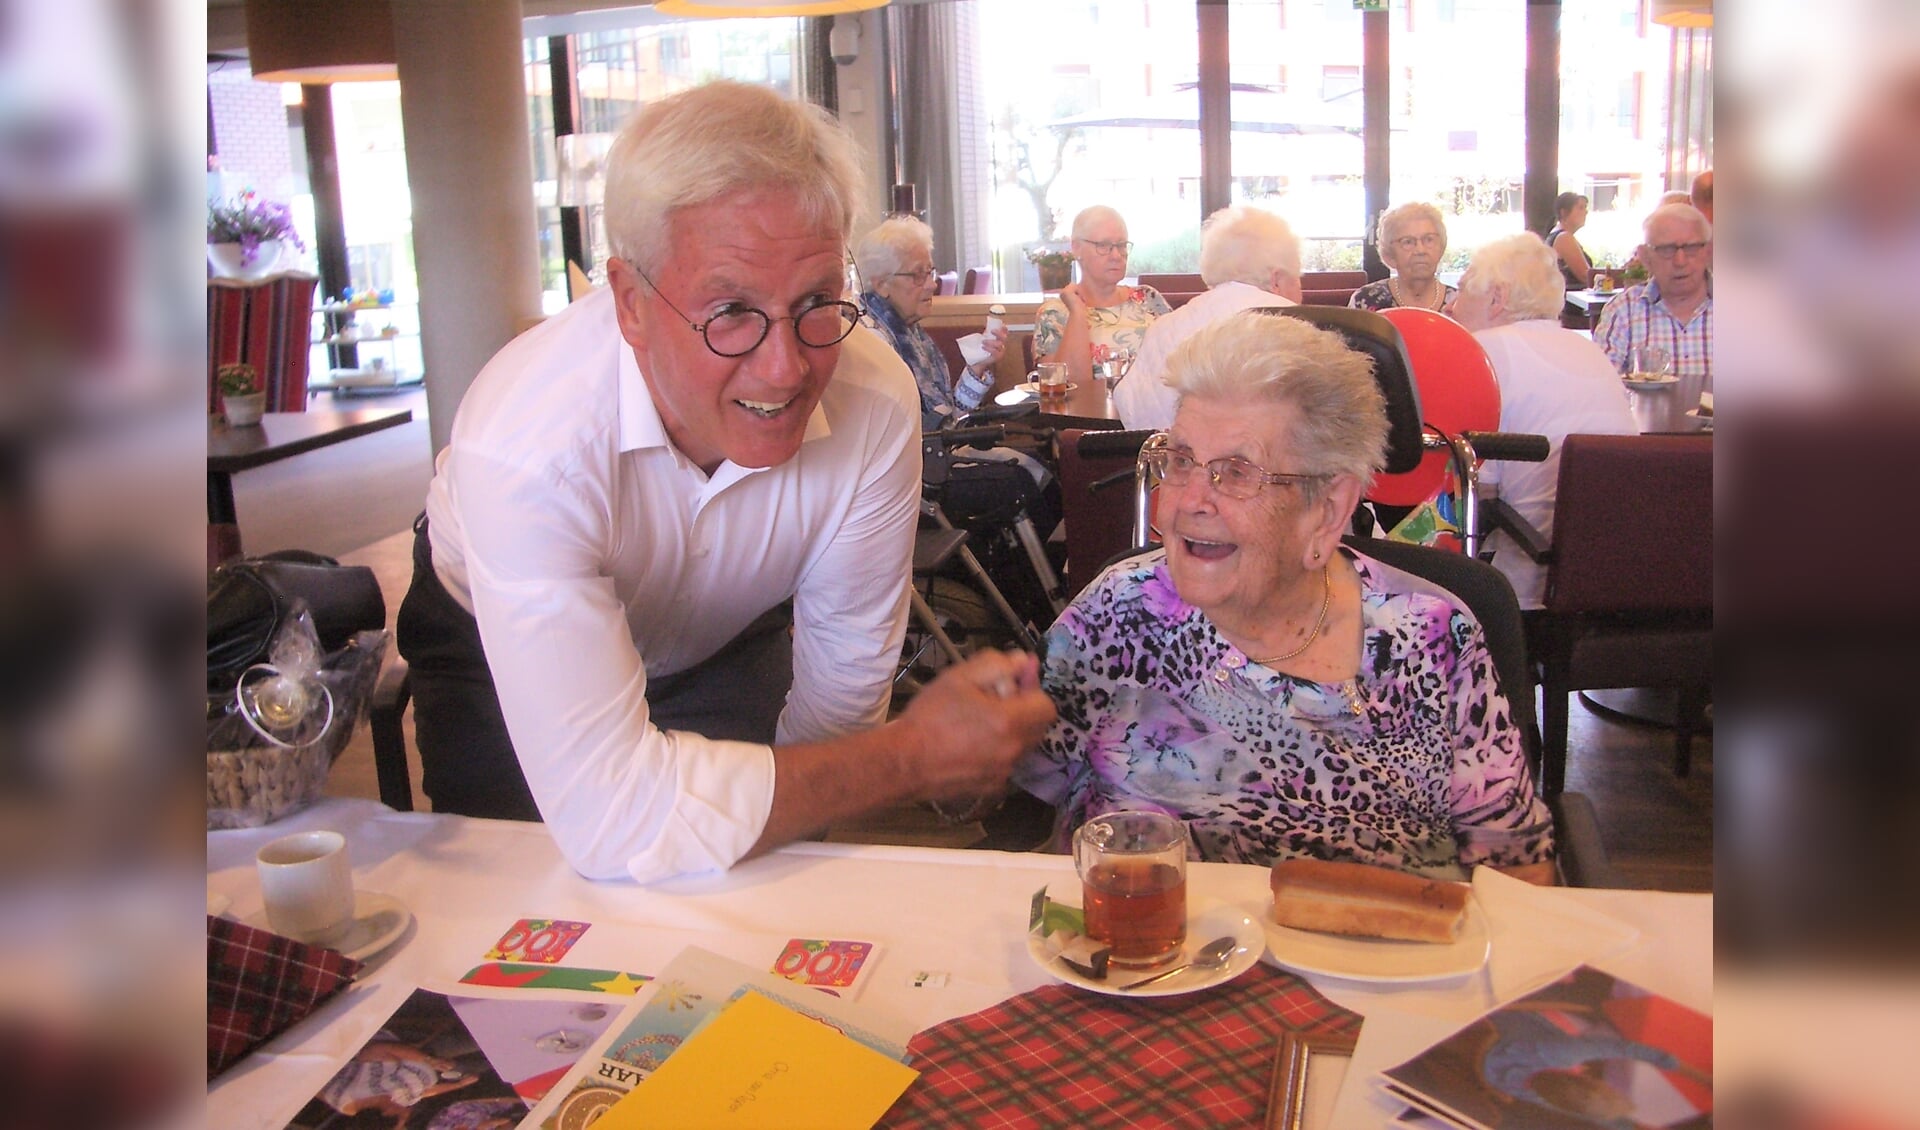 De 100-jarige vermaakte zich best met burgemeester Klijs. FOTO TIES STEEHOUWER